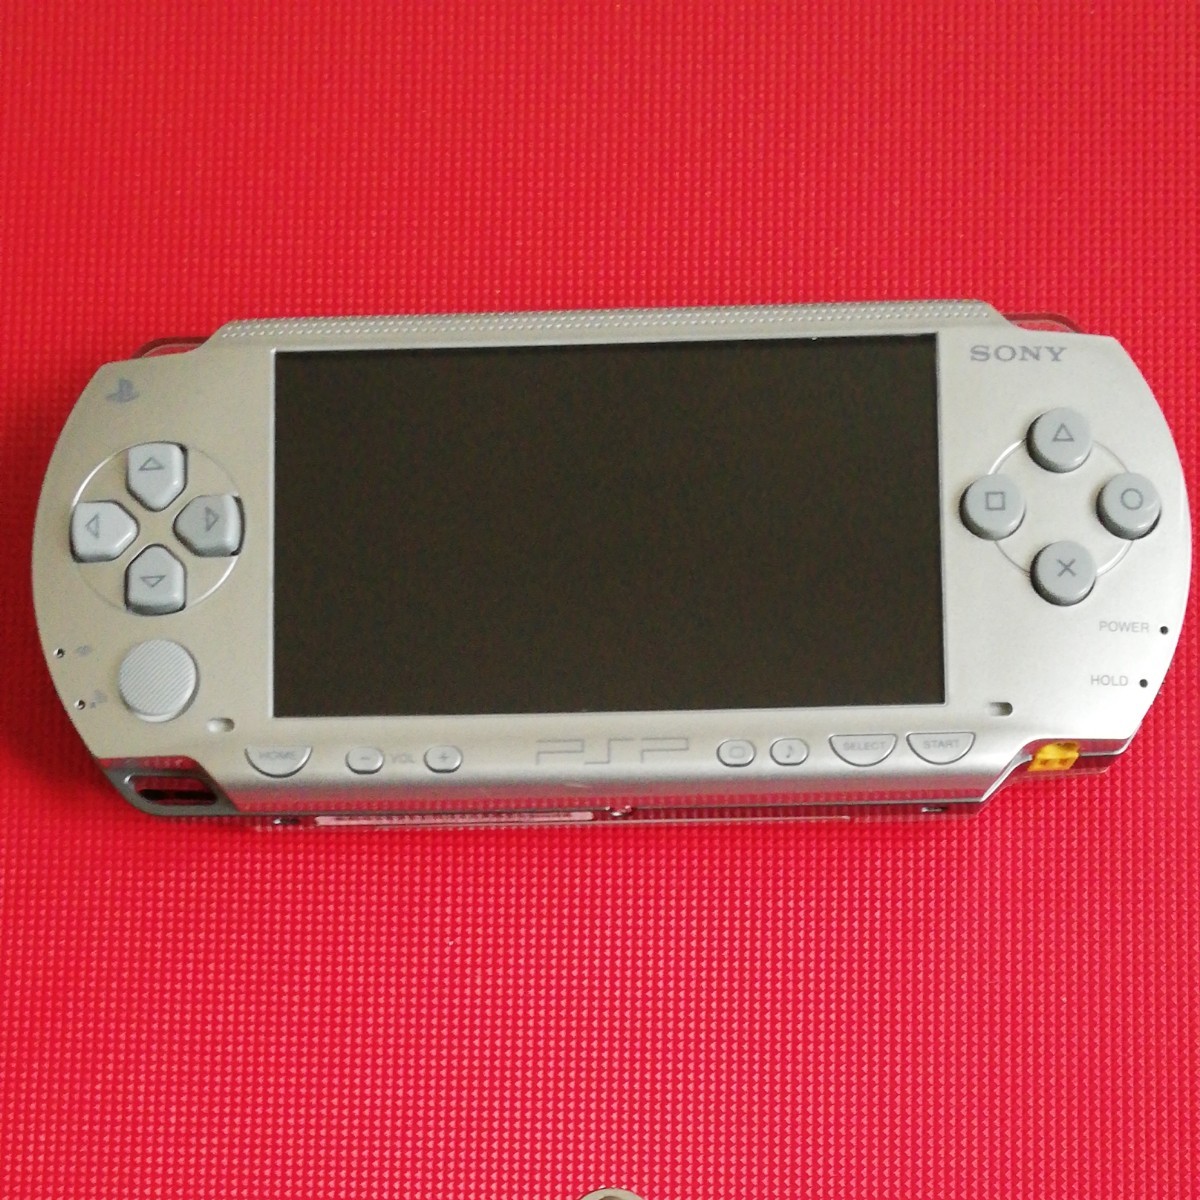 SONY  PSP-1000  シルバー！